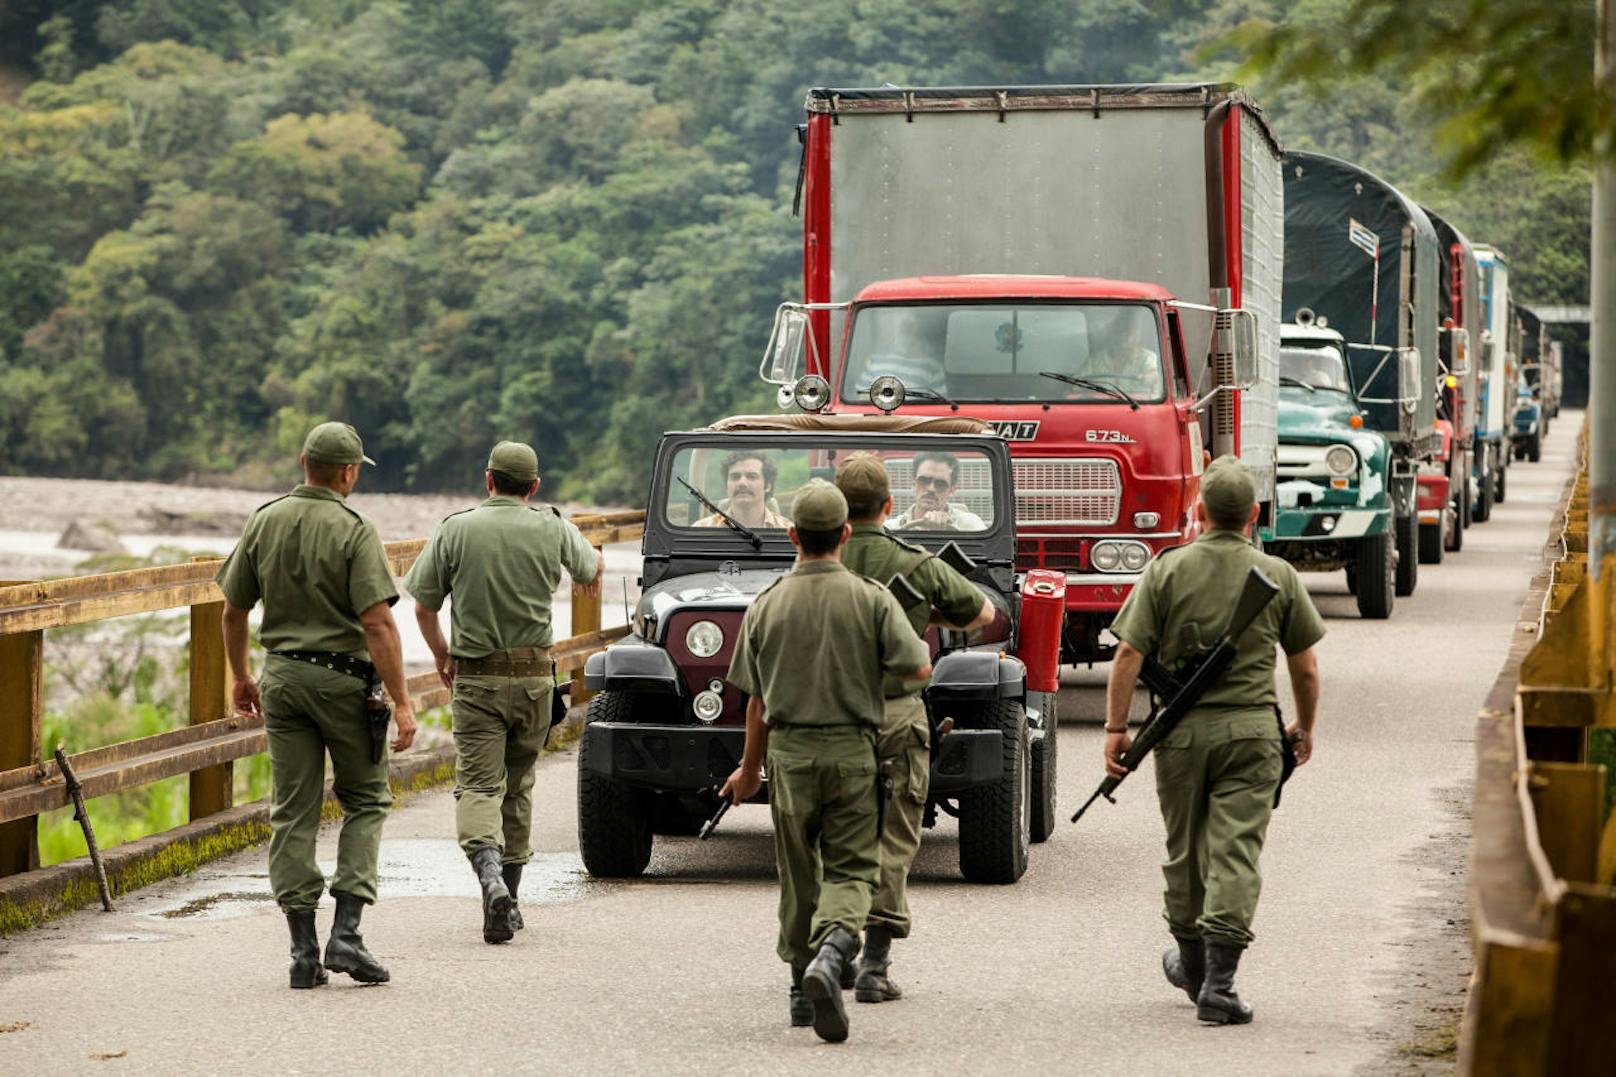 Korruption und Bestechung ist Alltag während Escobars Zeit in Kolumbien. (Credit: Daniel Daza)